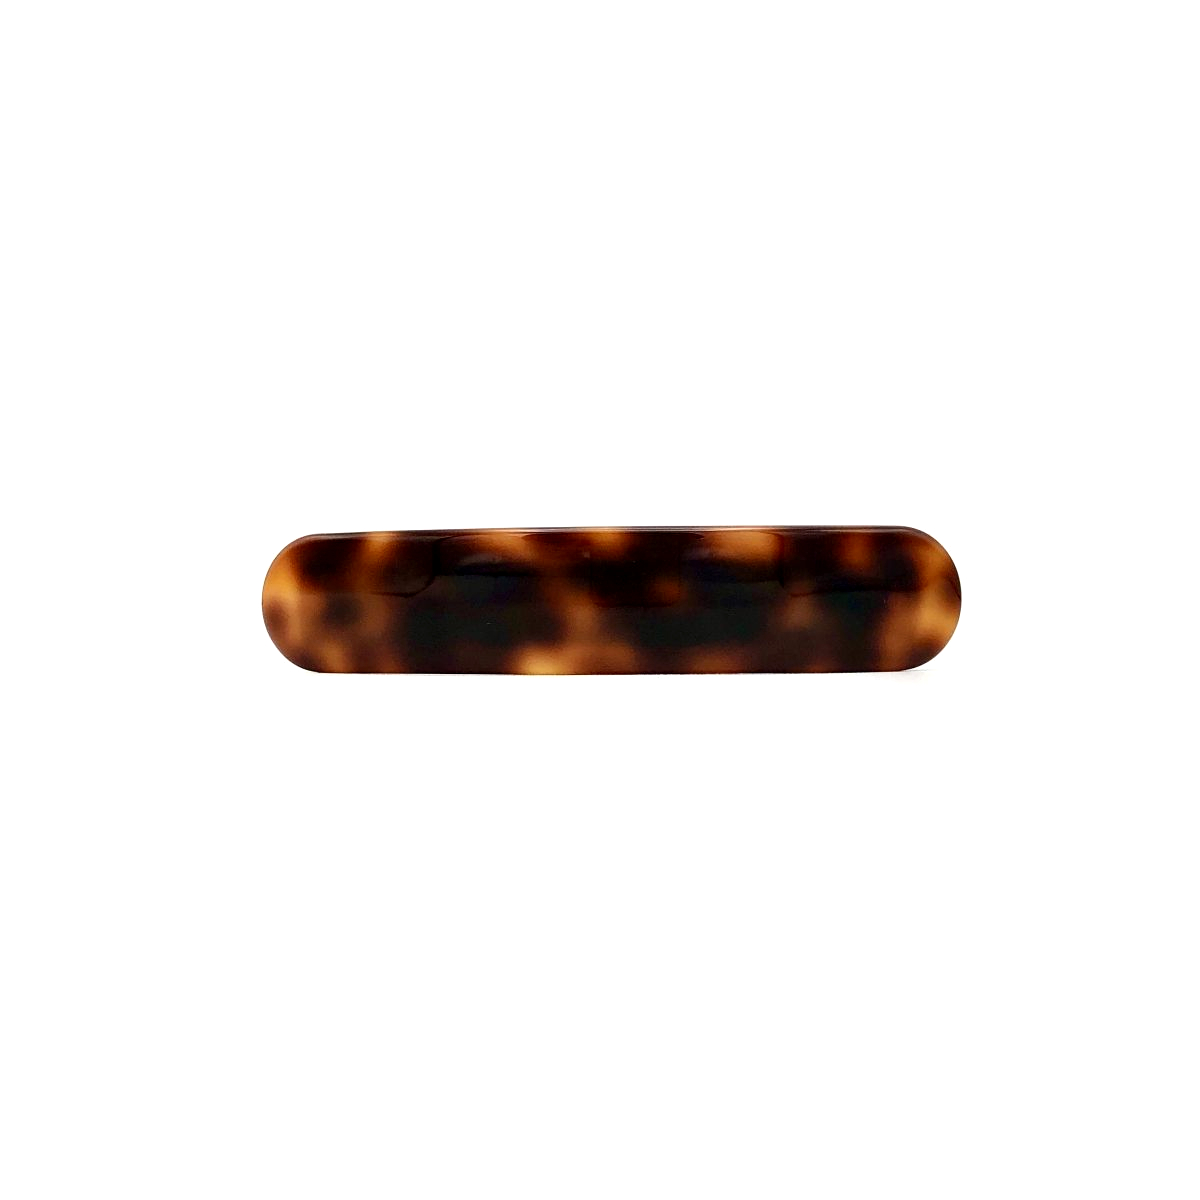 Haarspange rotbraun - mittel, paralleloval - 10 cm